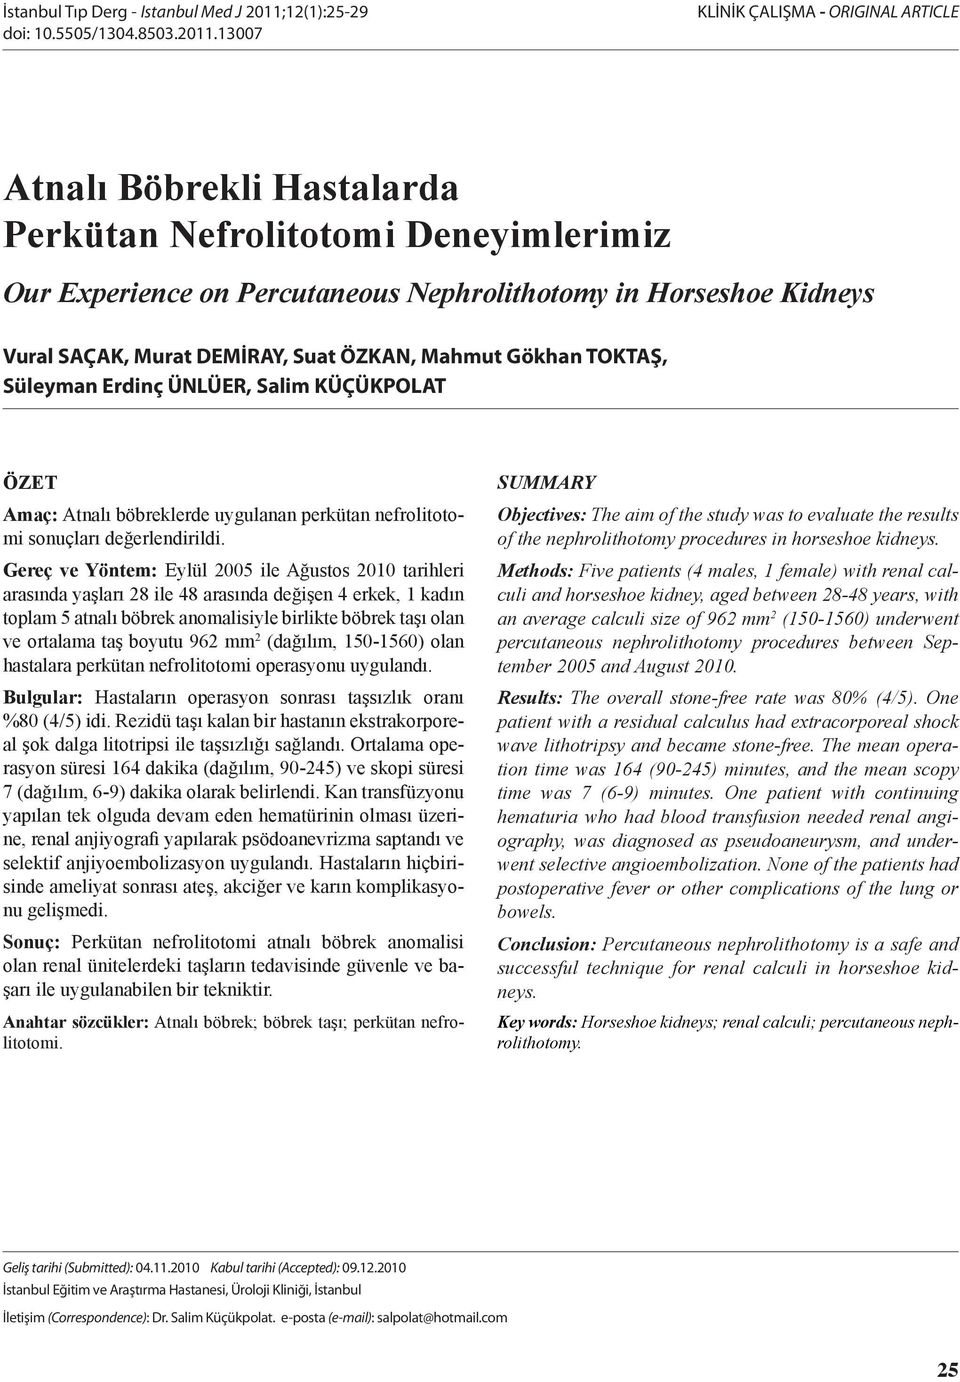 1007 KLİNİK ÇALIŞMA - ORIGINAL ARTICLE Atnalı Böbrekli Hastalarda Perkütan Nefrolitotomi Deneyimlerimiz Our Experience on Percutaneous Nephrolithotomy in Horseshoe Kidneys Vural SAÇAK, Murat DEMİRAY,